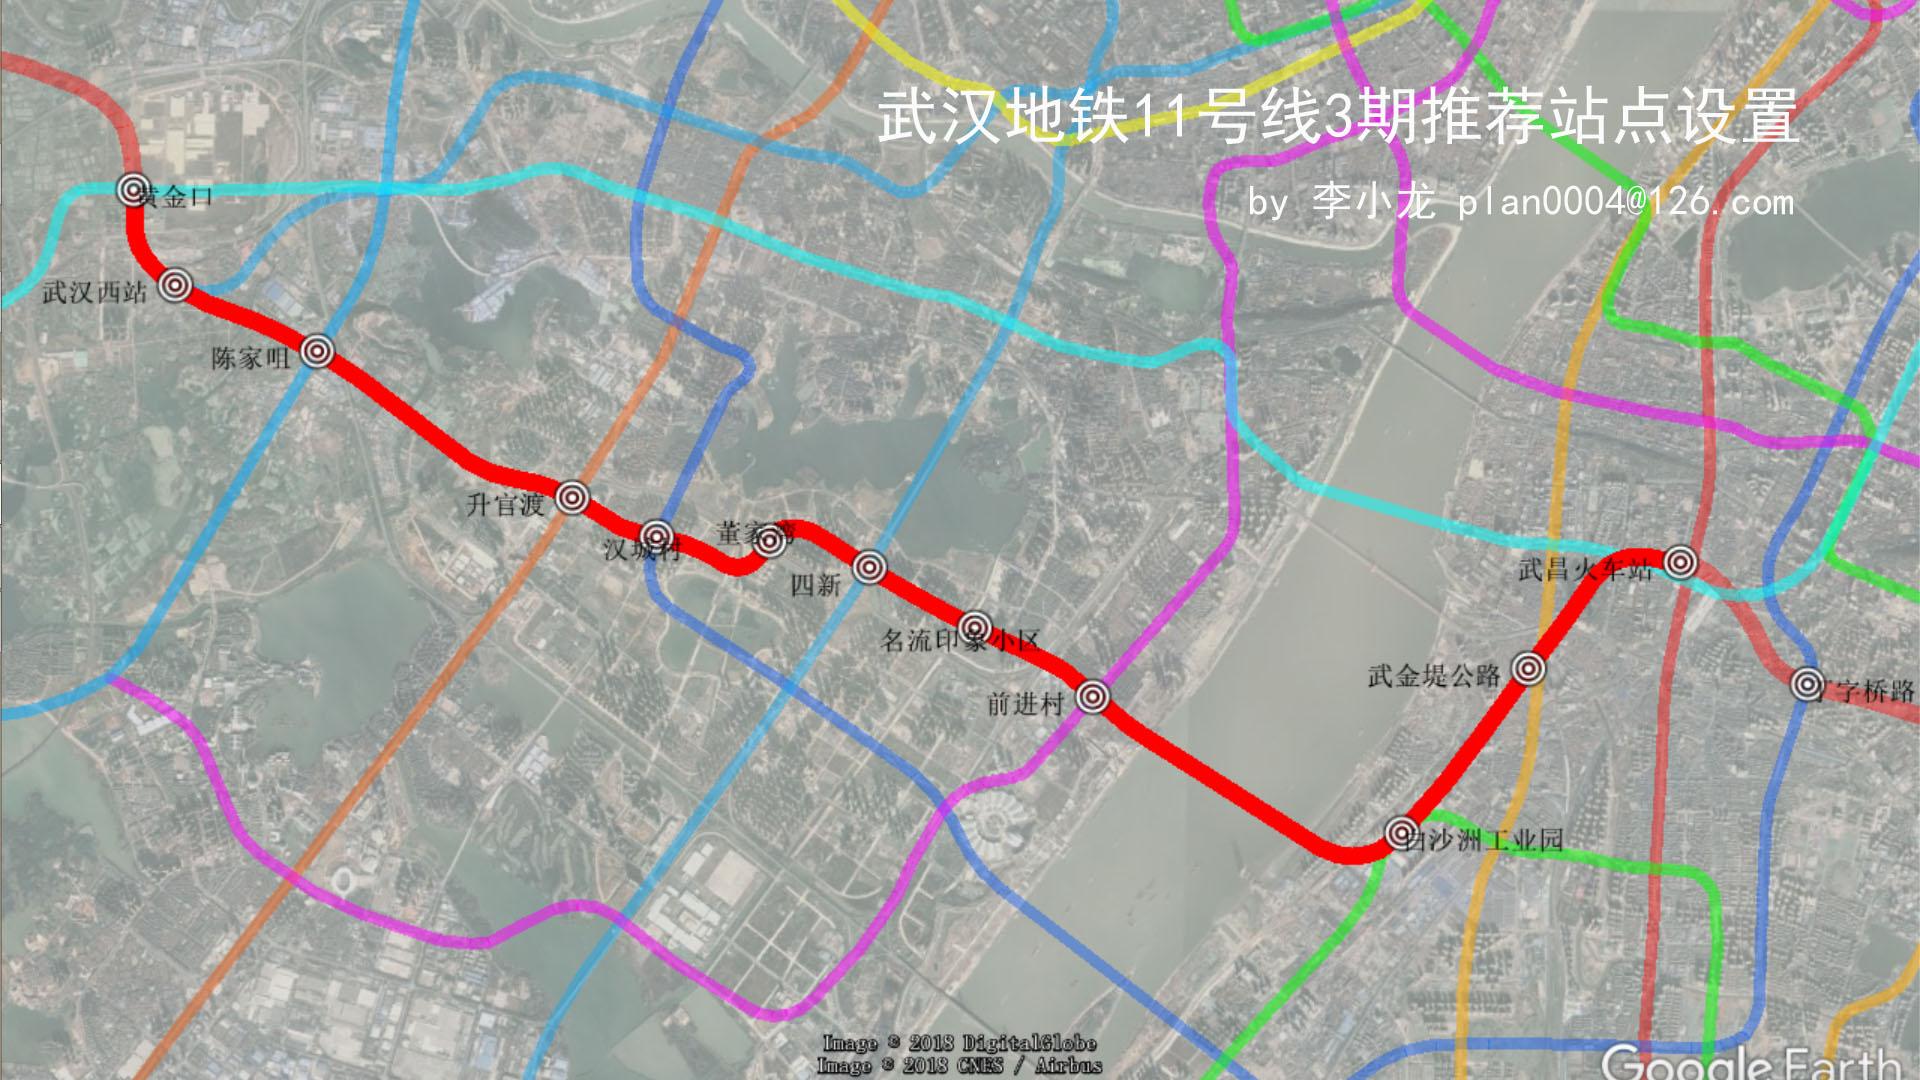 武汉地铁11号线新规划图片